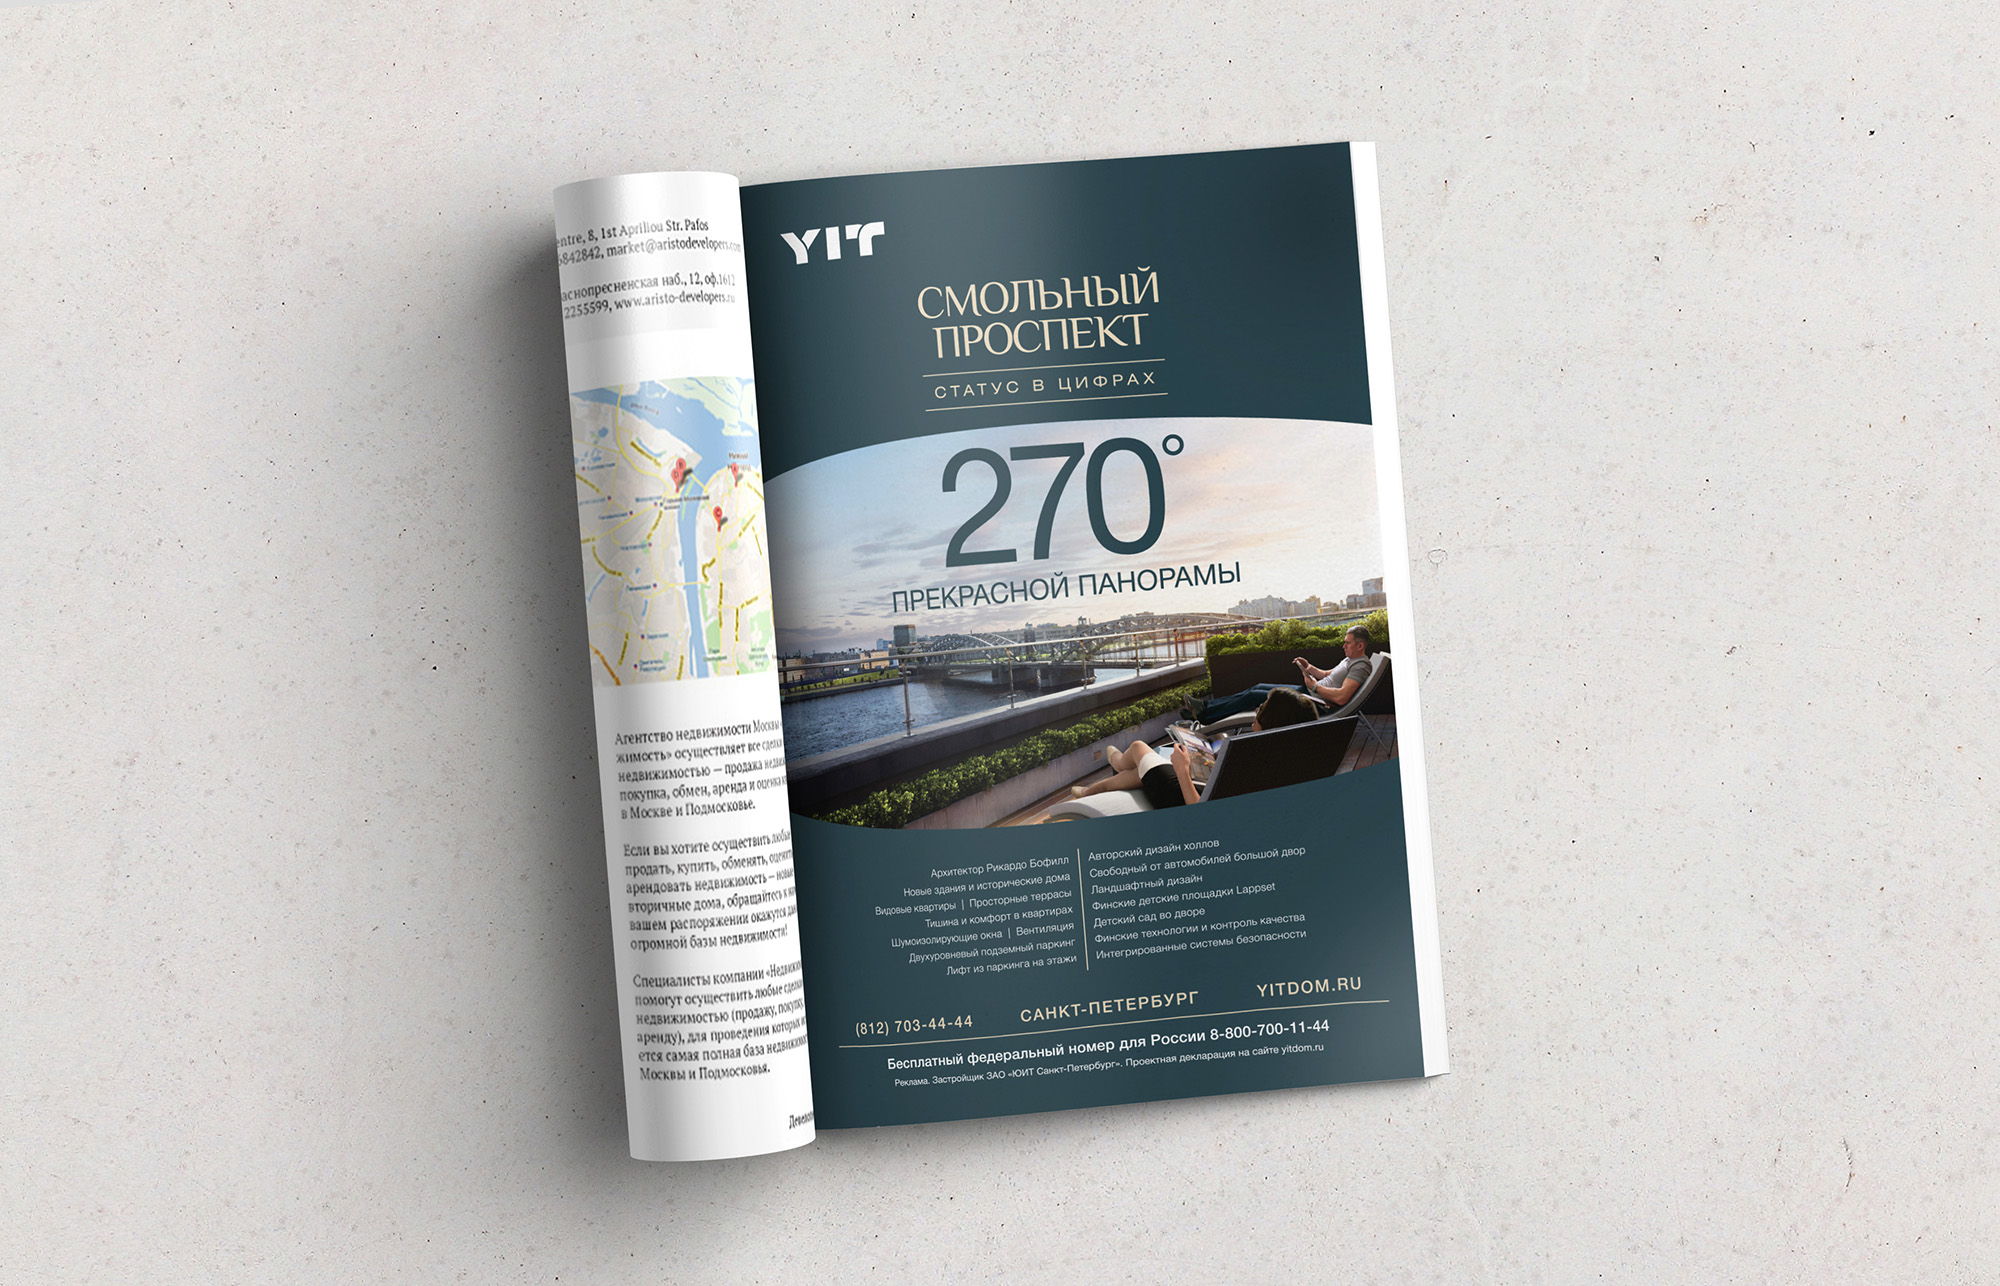 Реклама кампания строительной компании YIT. Задача: показать достоинство и преимущество статусного жилого комплекса. Коммуникационное агентство WeDESIGN | МыДИЗАЙН